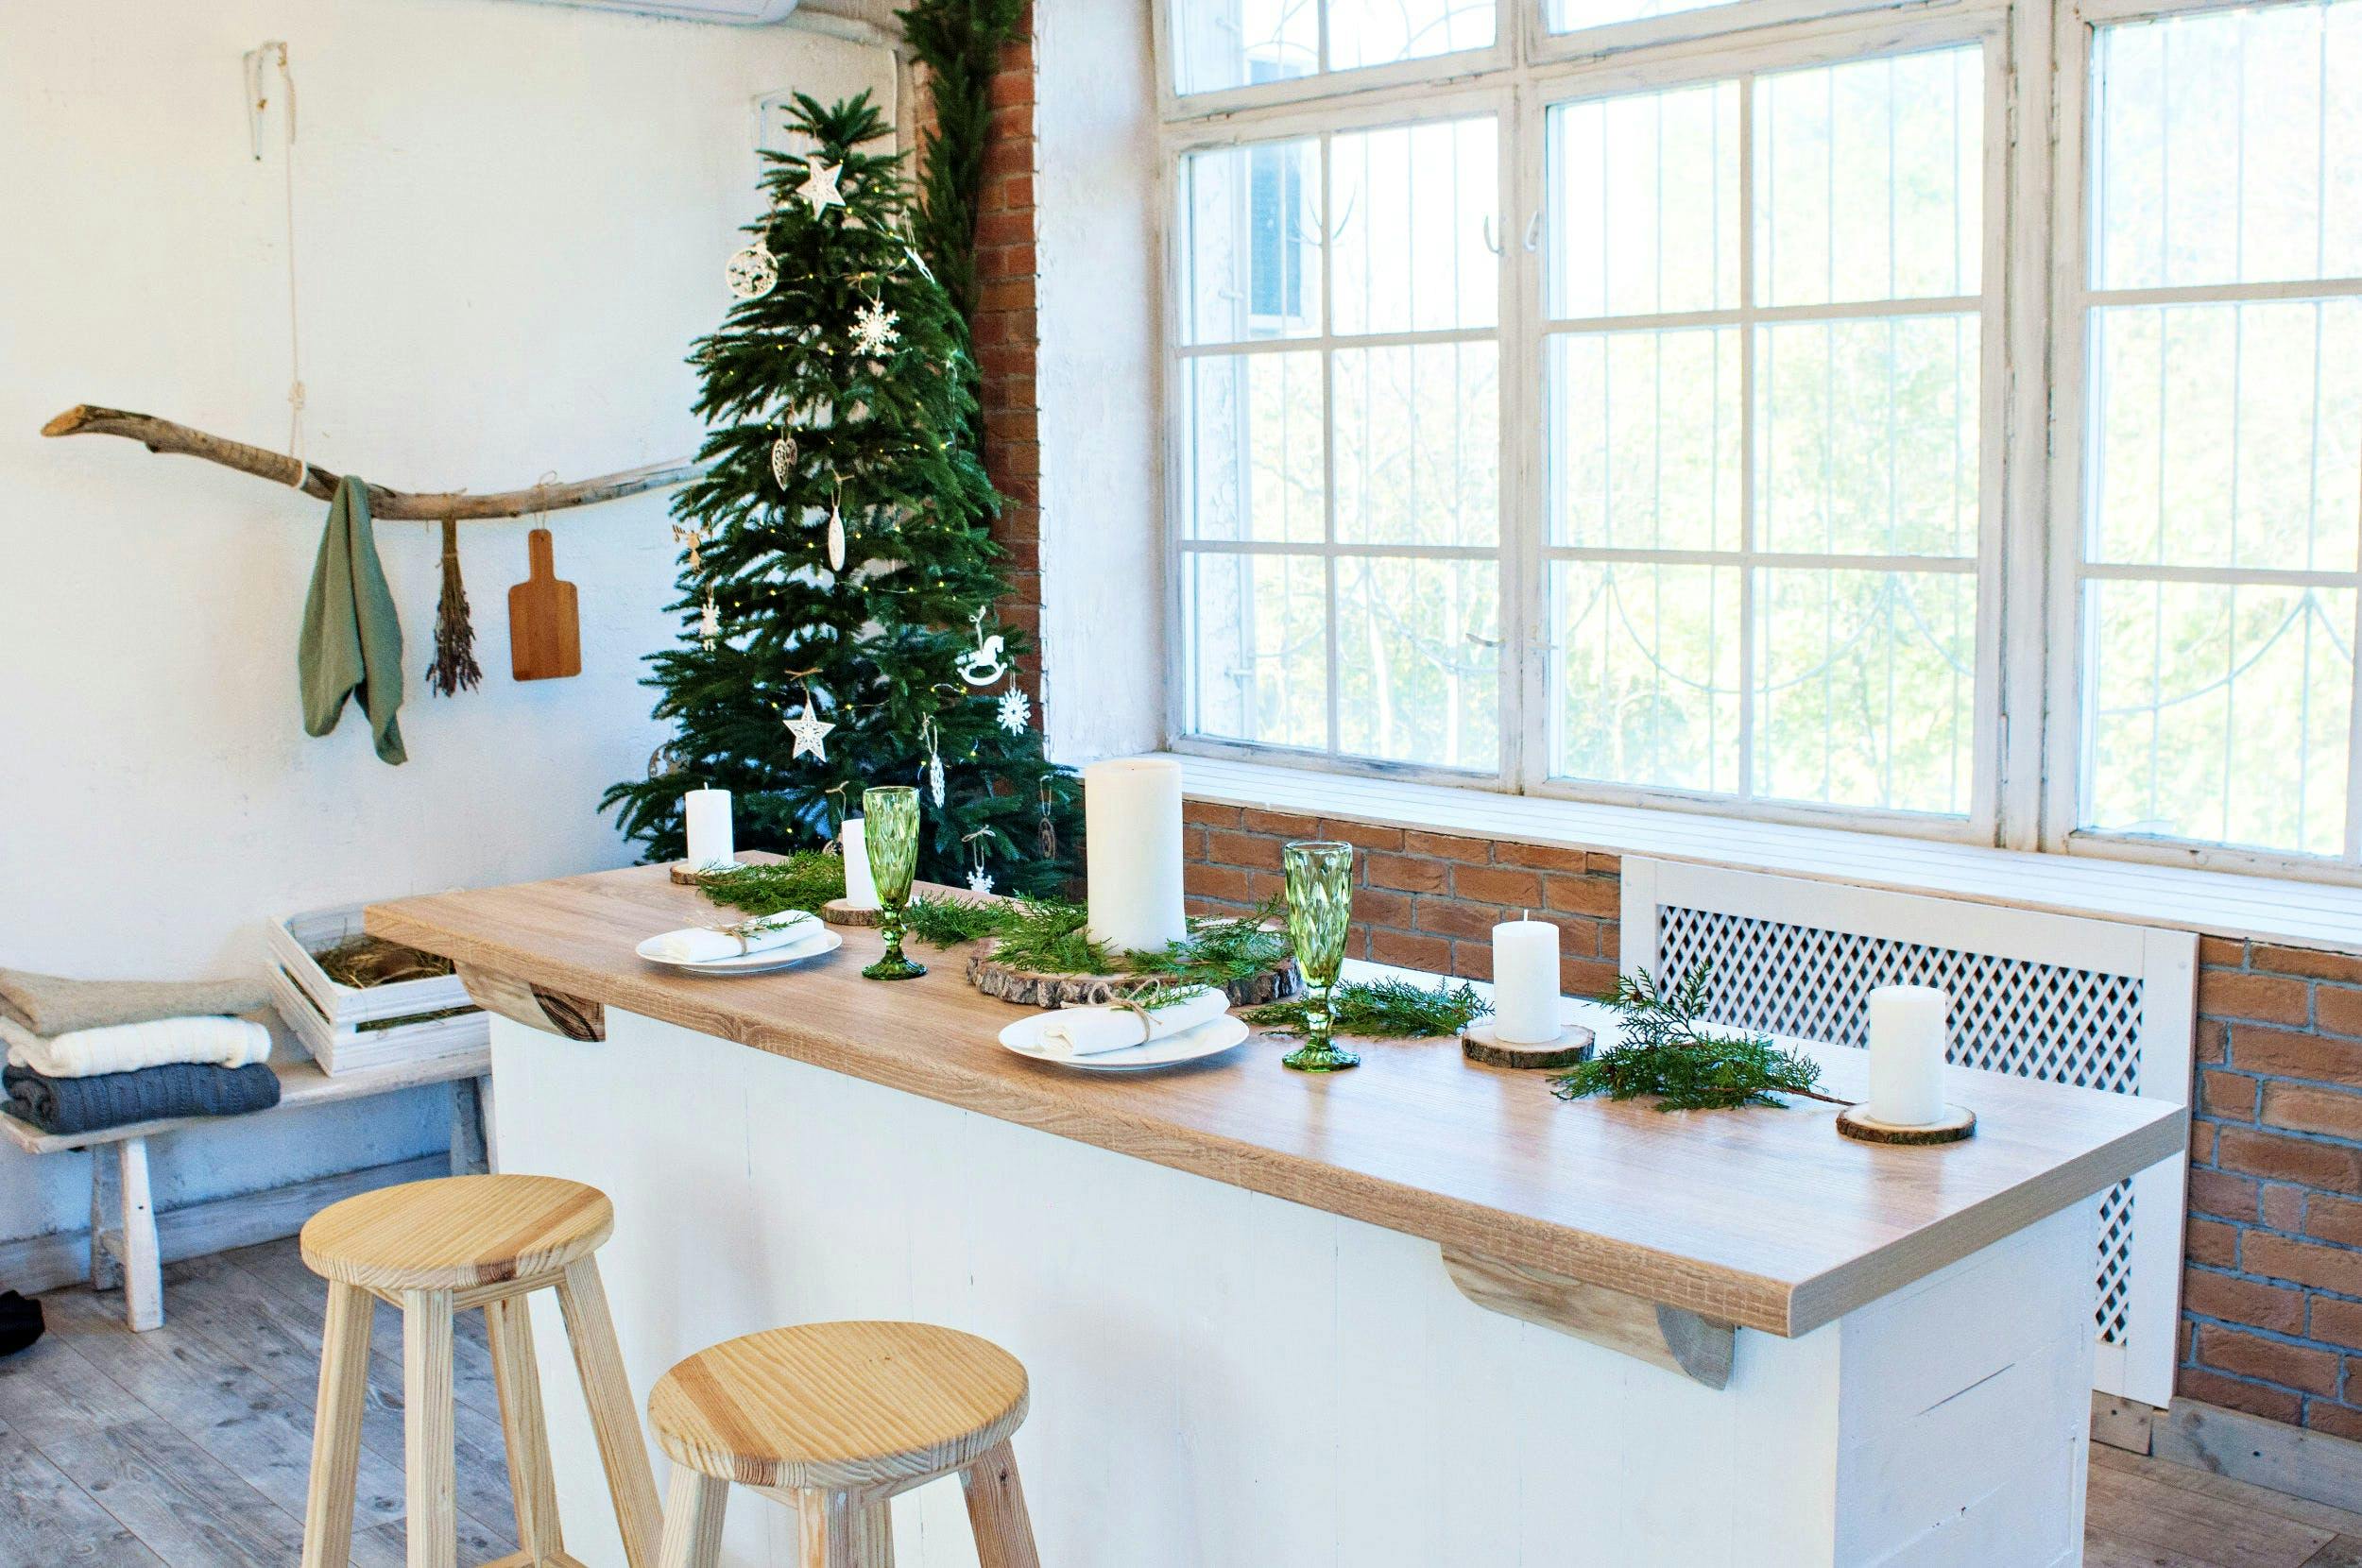 Pared de madera blanca con ventana decorativa blanca puerta y adornos  navideños